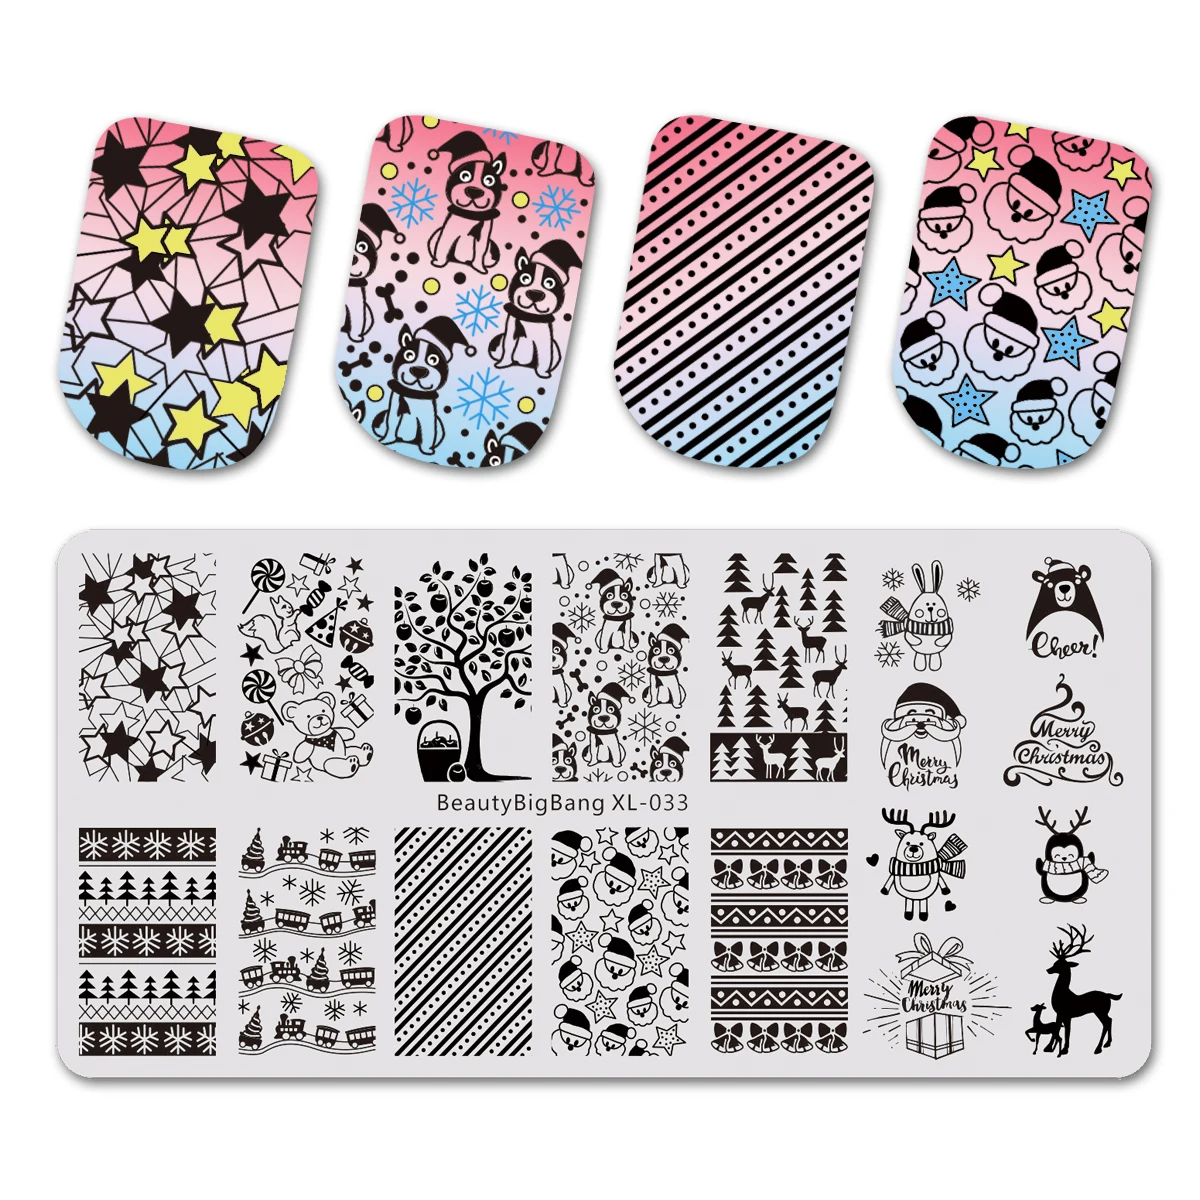 BeautyBigBang природа растения животные строительный дизайн изображения ногтей шаблон штамповочной пластины дизайн ногтей штамп ногтей плесень - Цвет: 643824322837